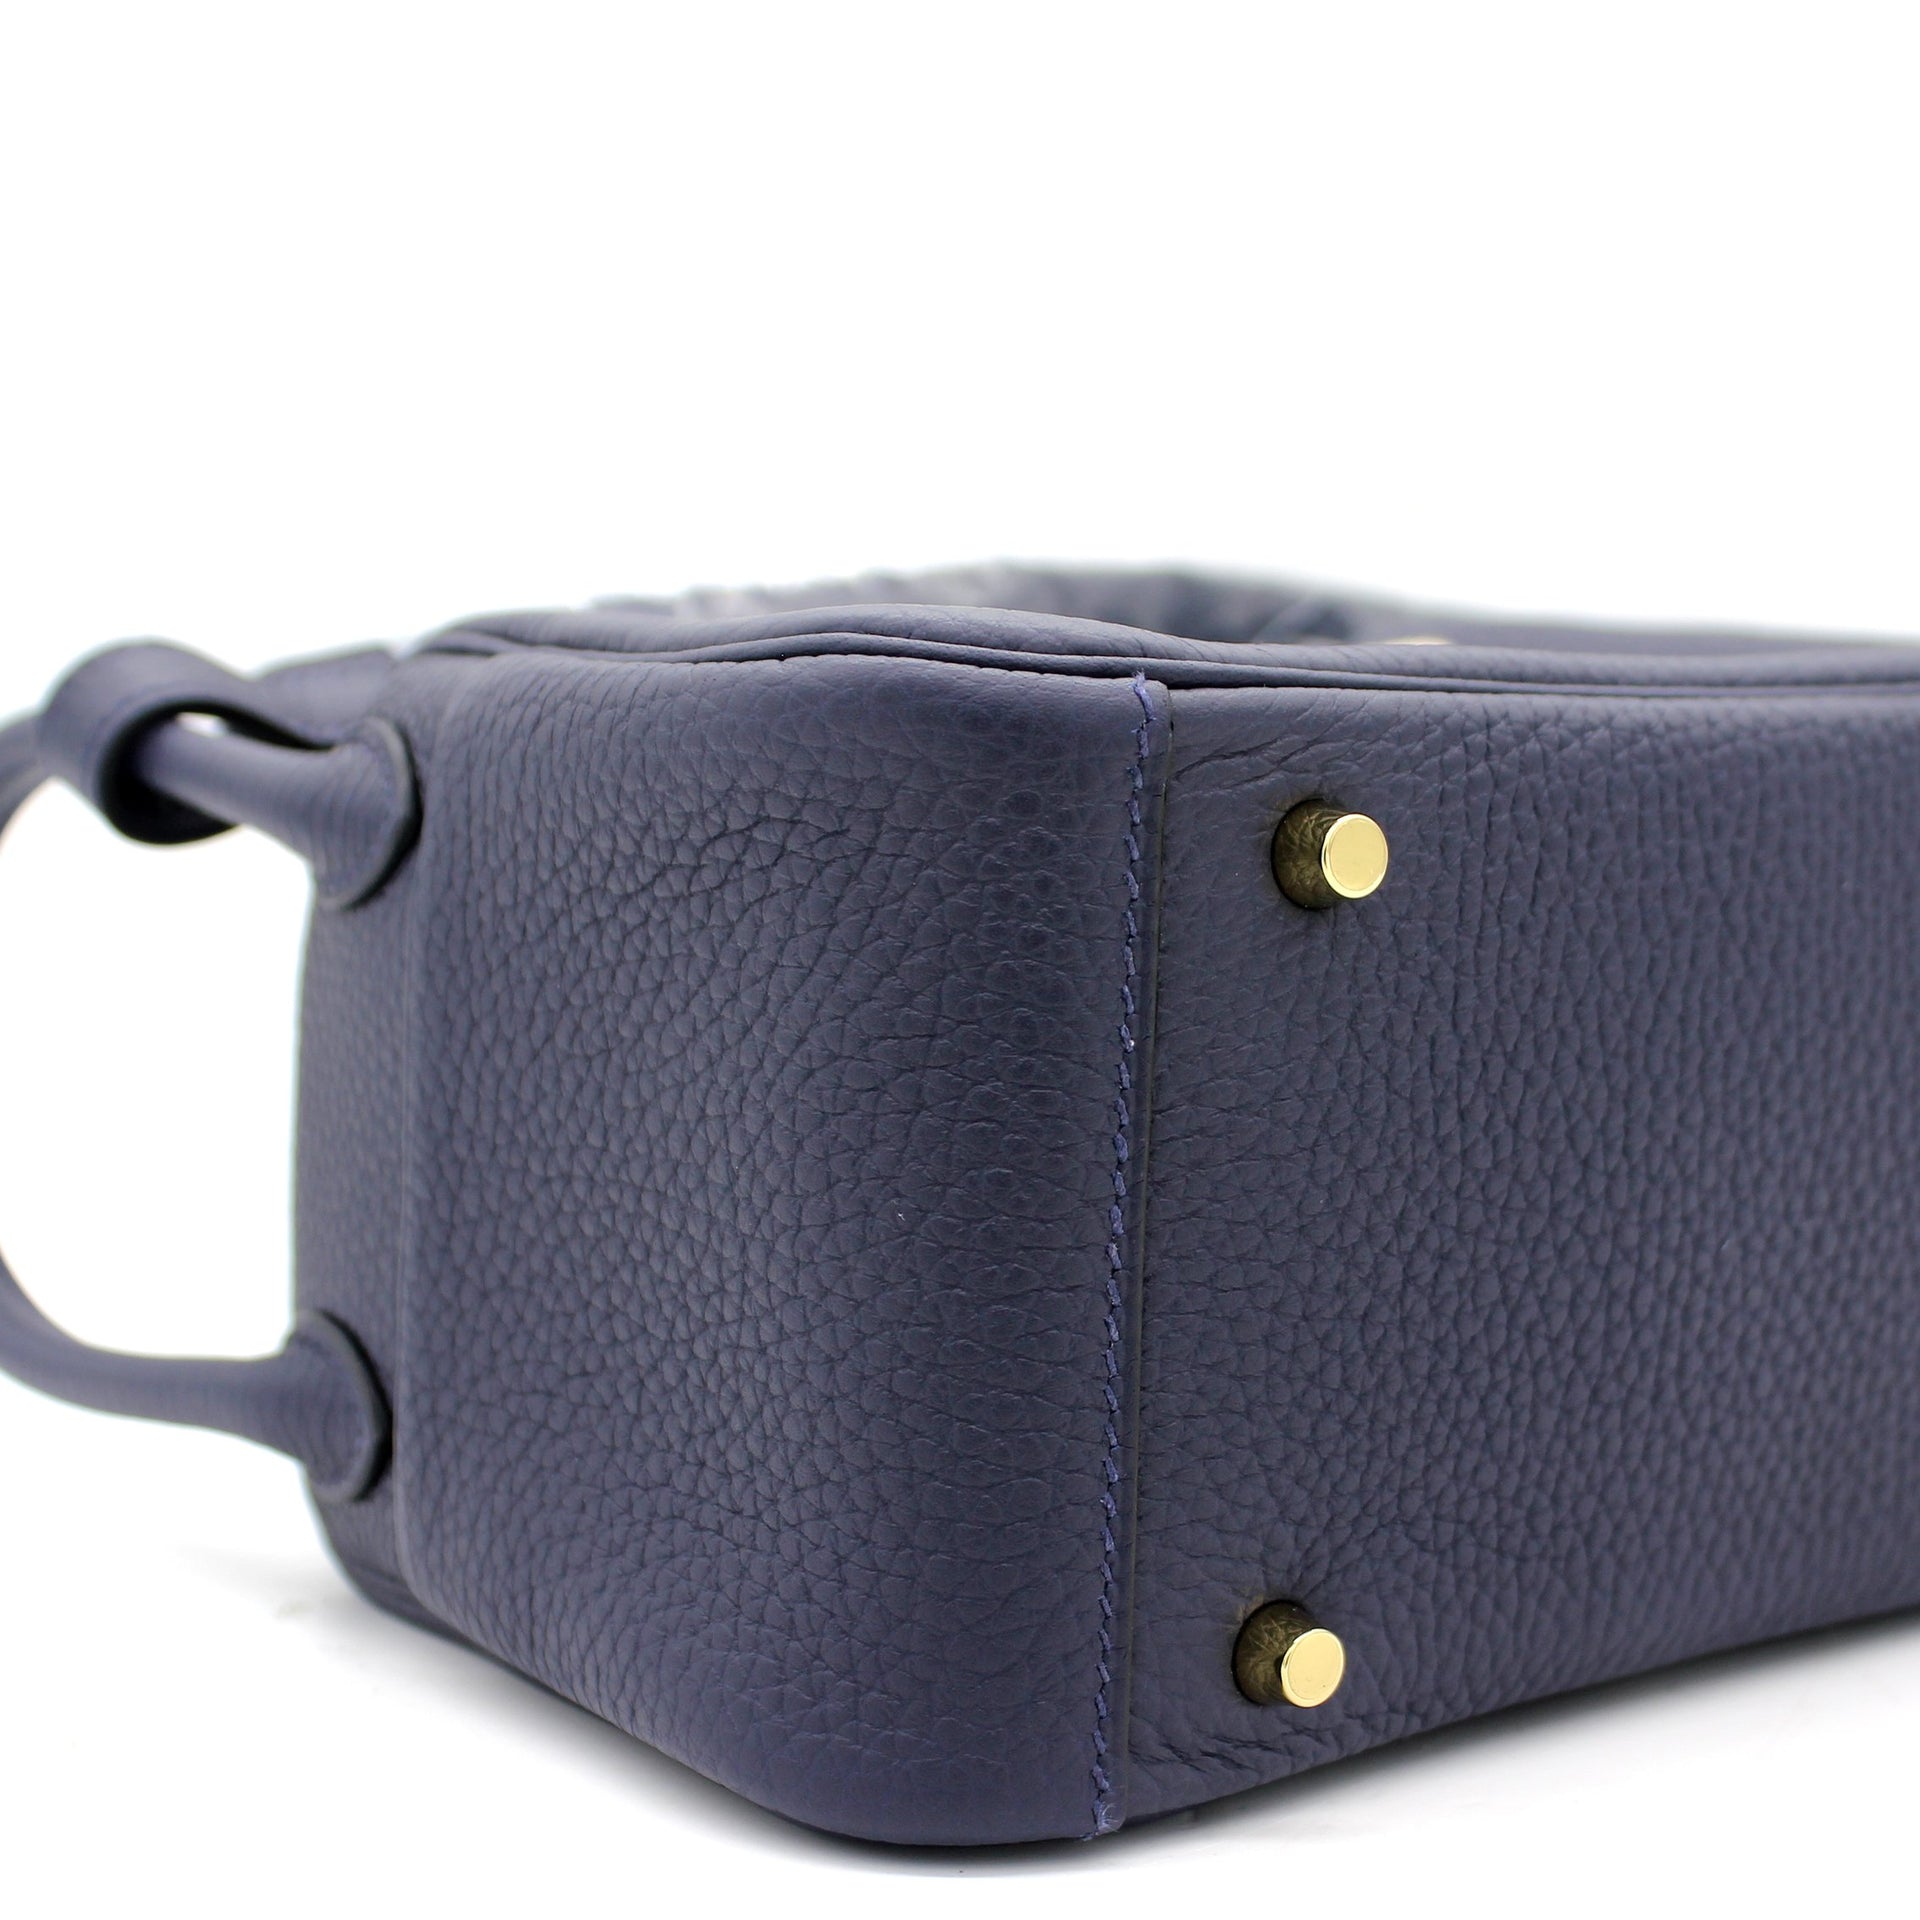 marginw using #Hermes lindy mini bag (noir) in taurillon clemence